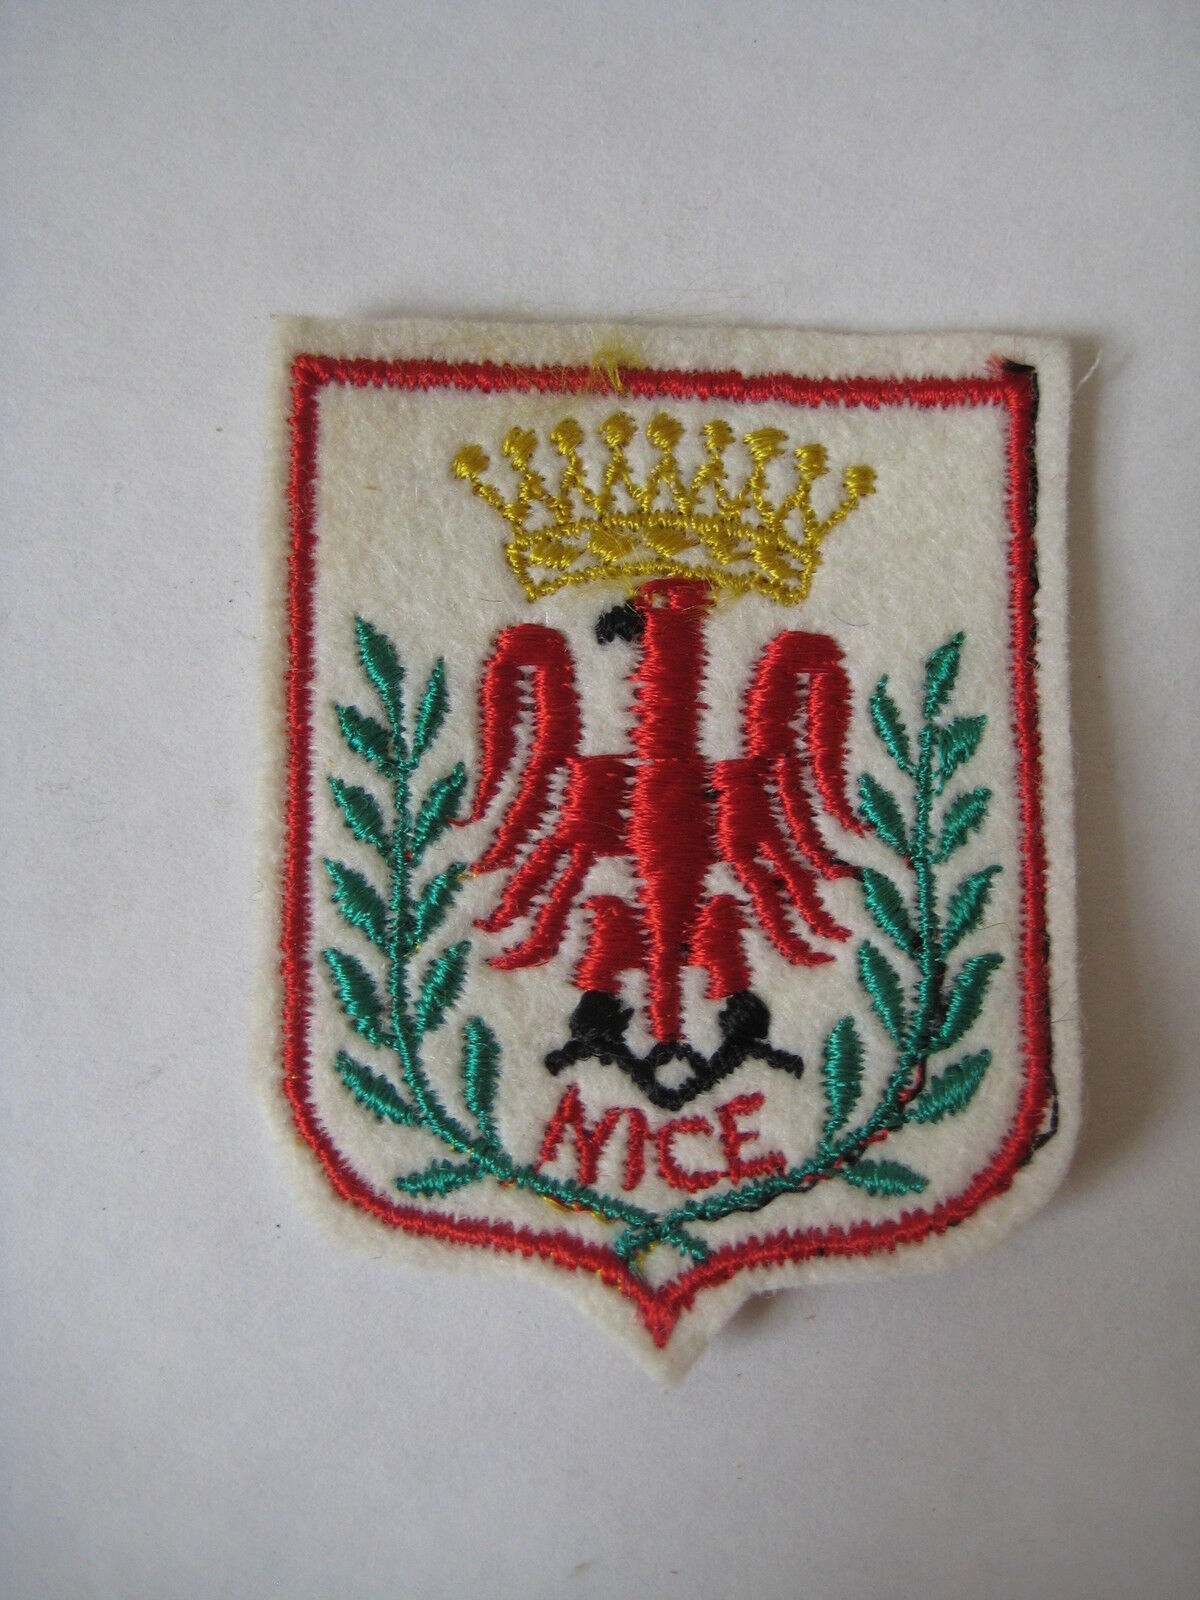 Vintage Nice France Cote d'Azur coat of arms PATCH souvenir retro French Riviera